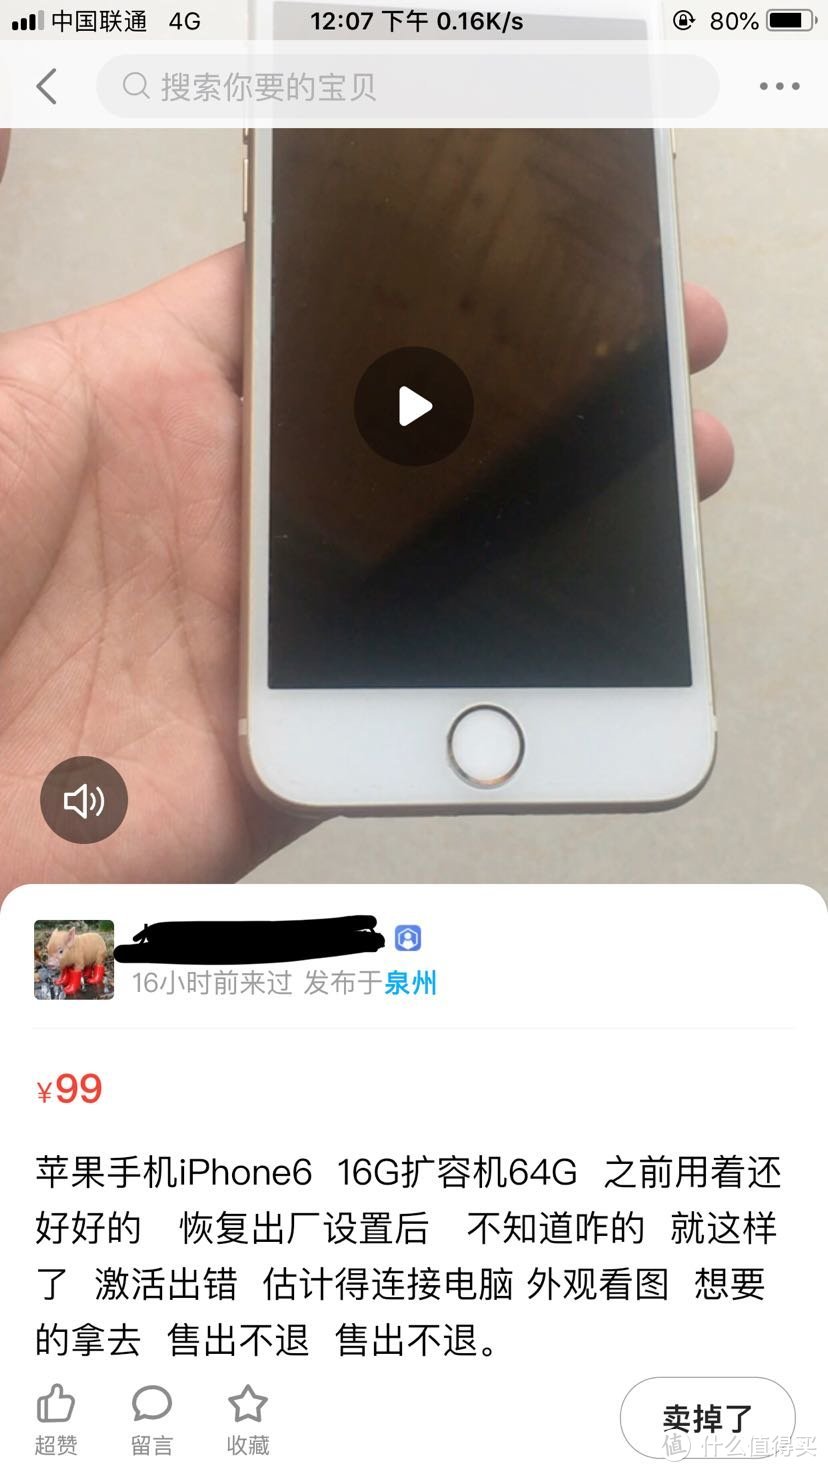 99元闲鱼竟然能收到 iPhone6 64G